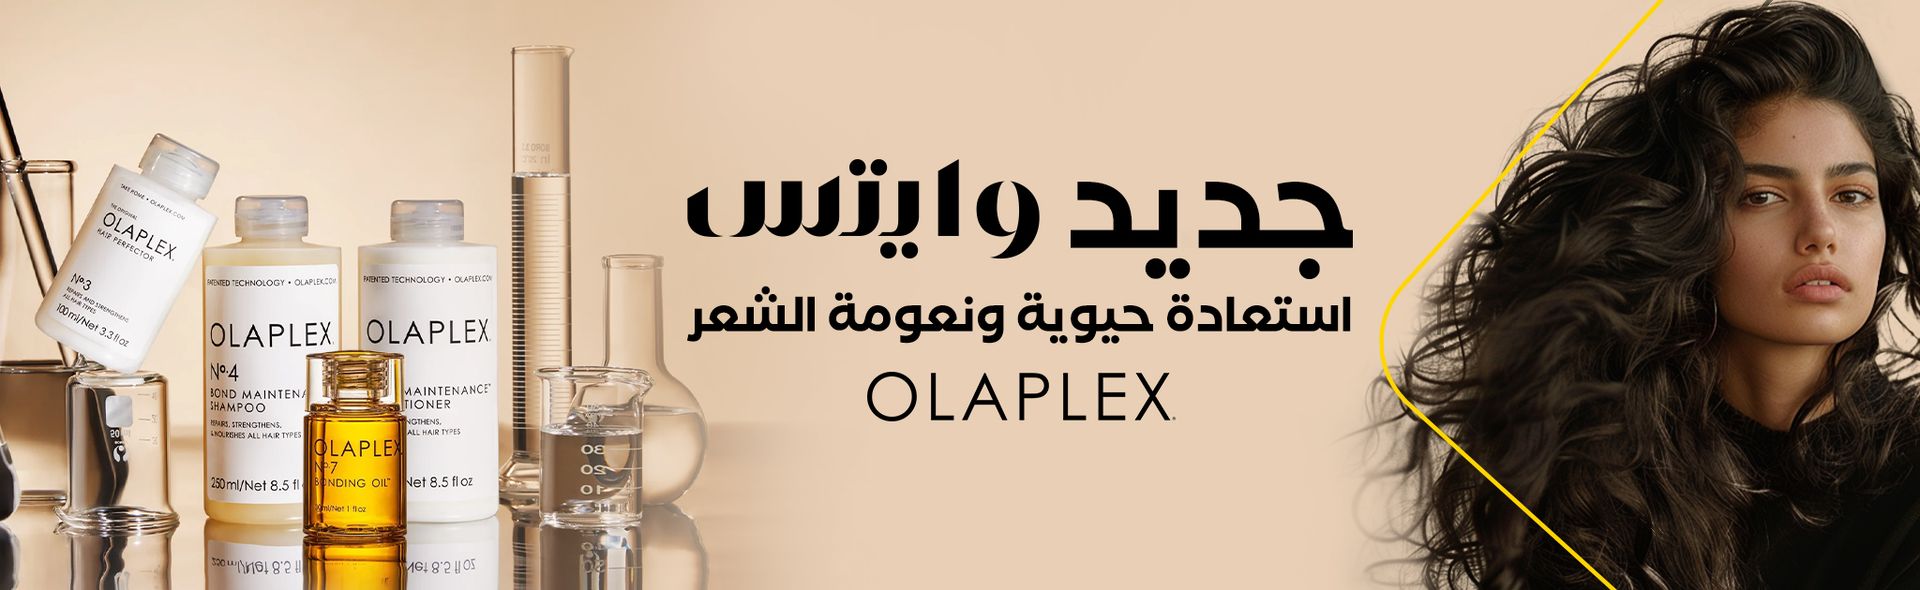 olaplex whites Ar